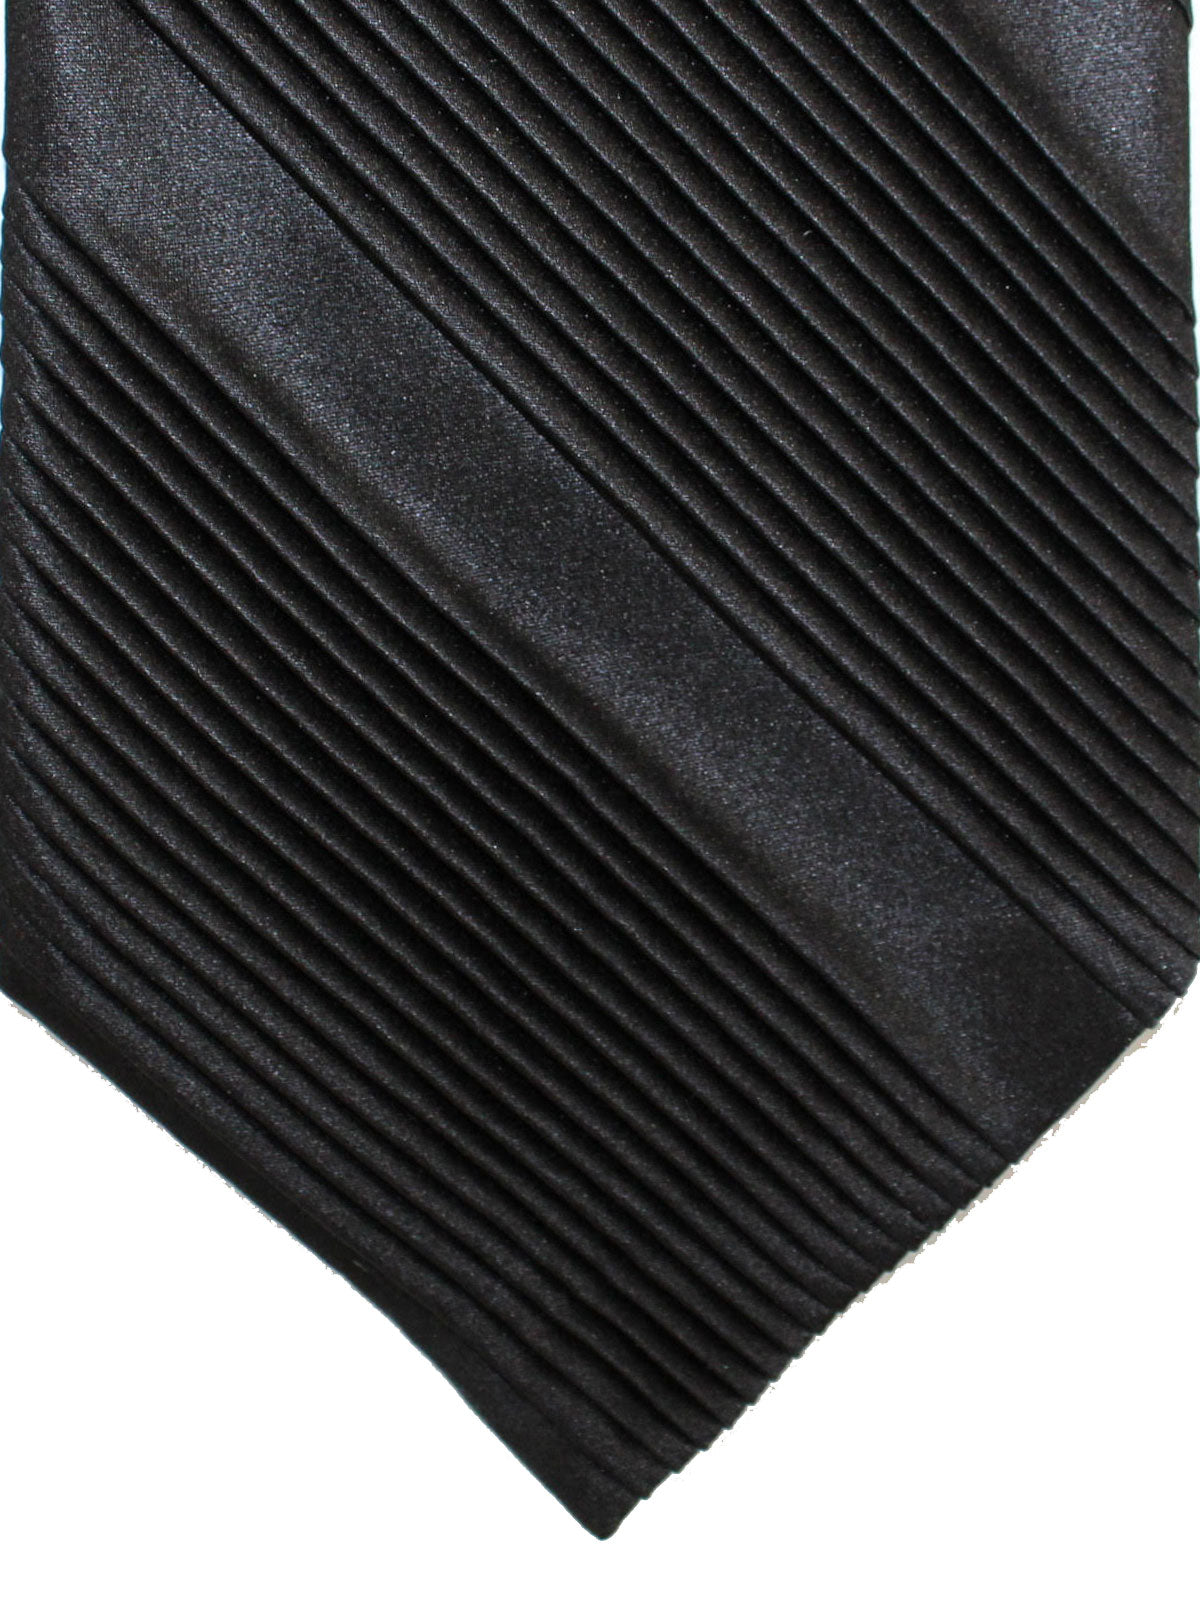 Stefano Ricci Pleated Silk Tie Black Solid Design